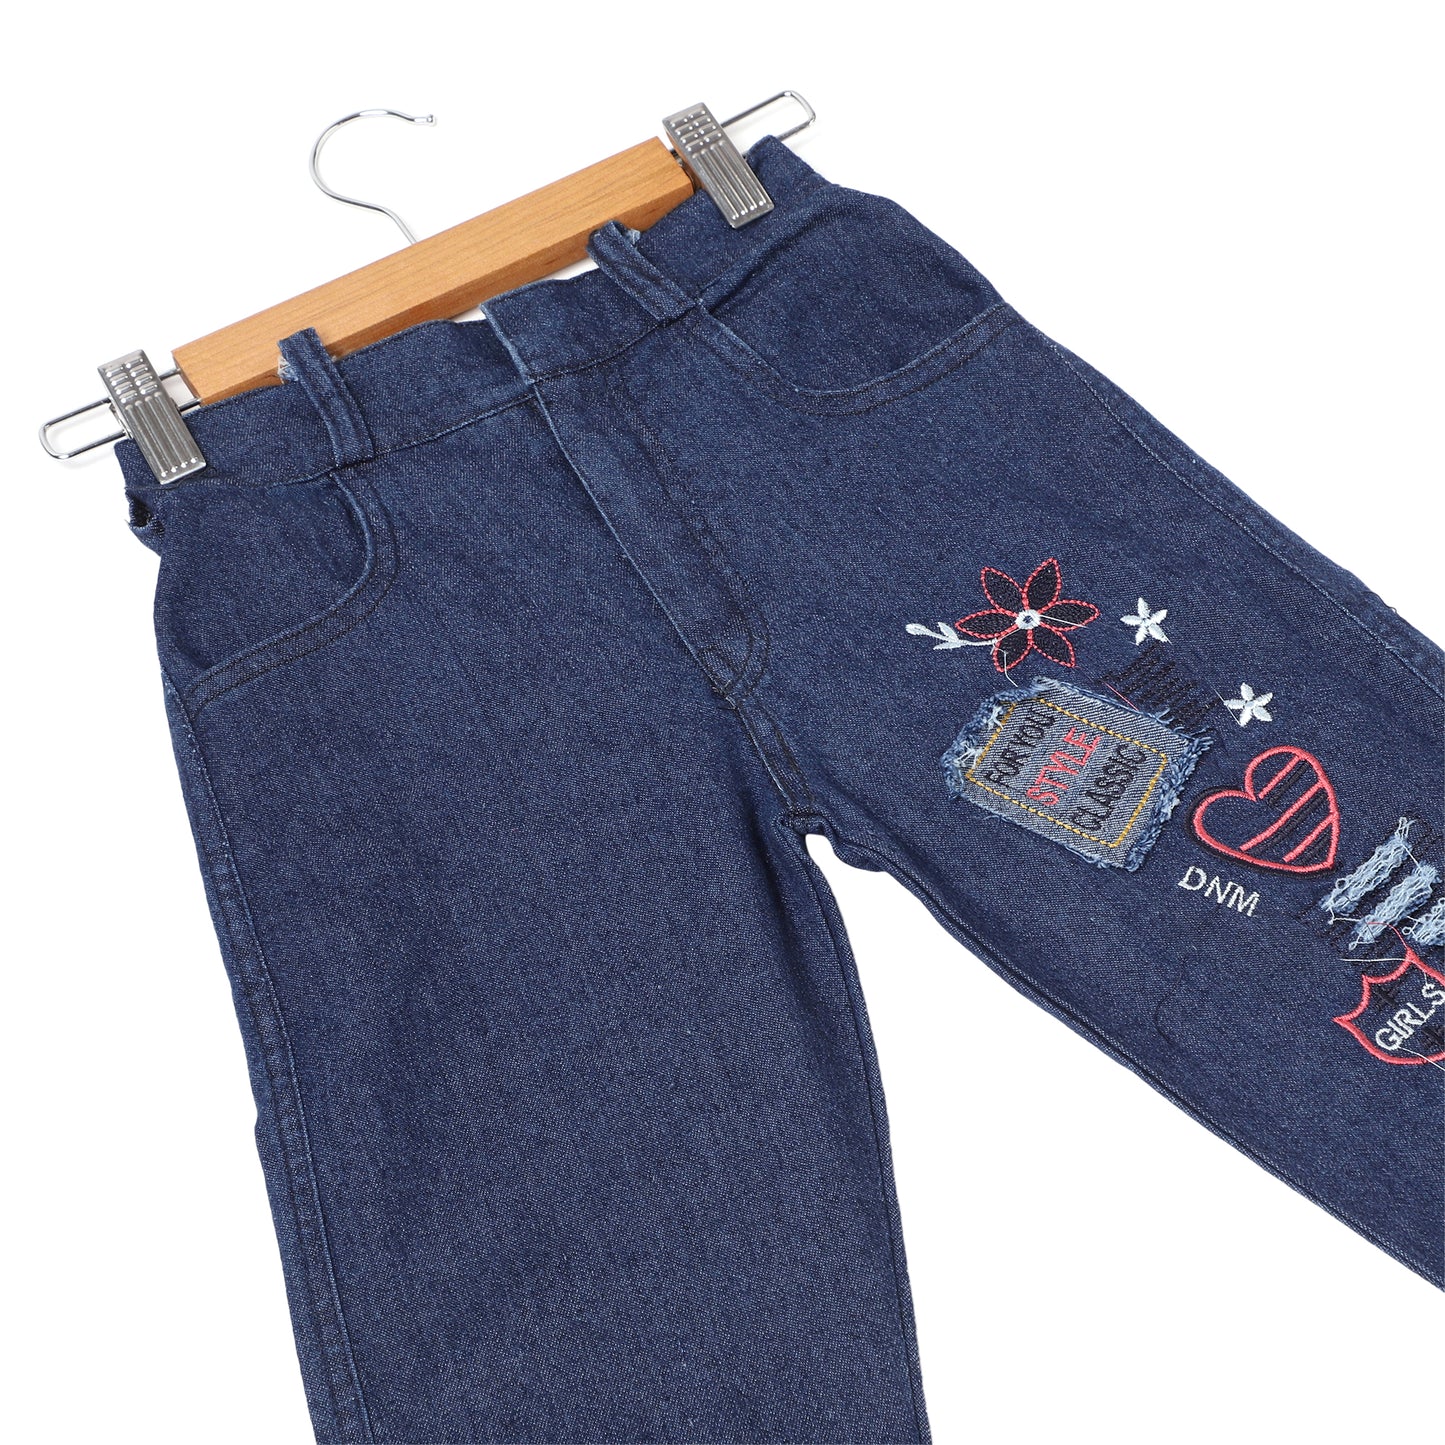 Denim Jeans for Girls - 10